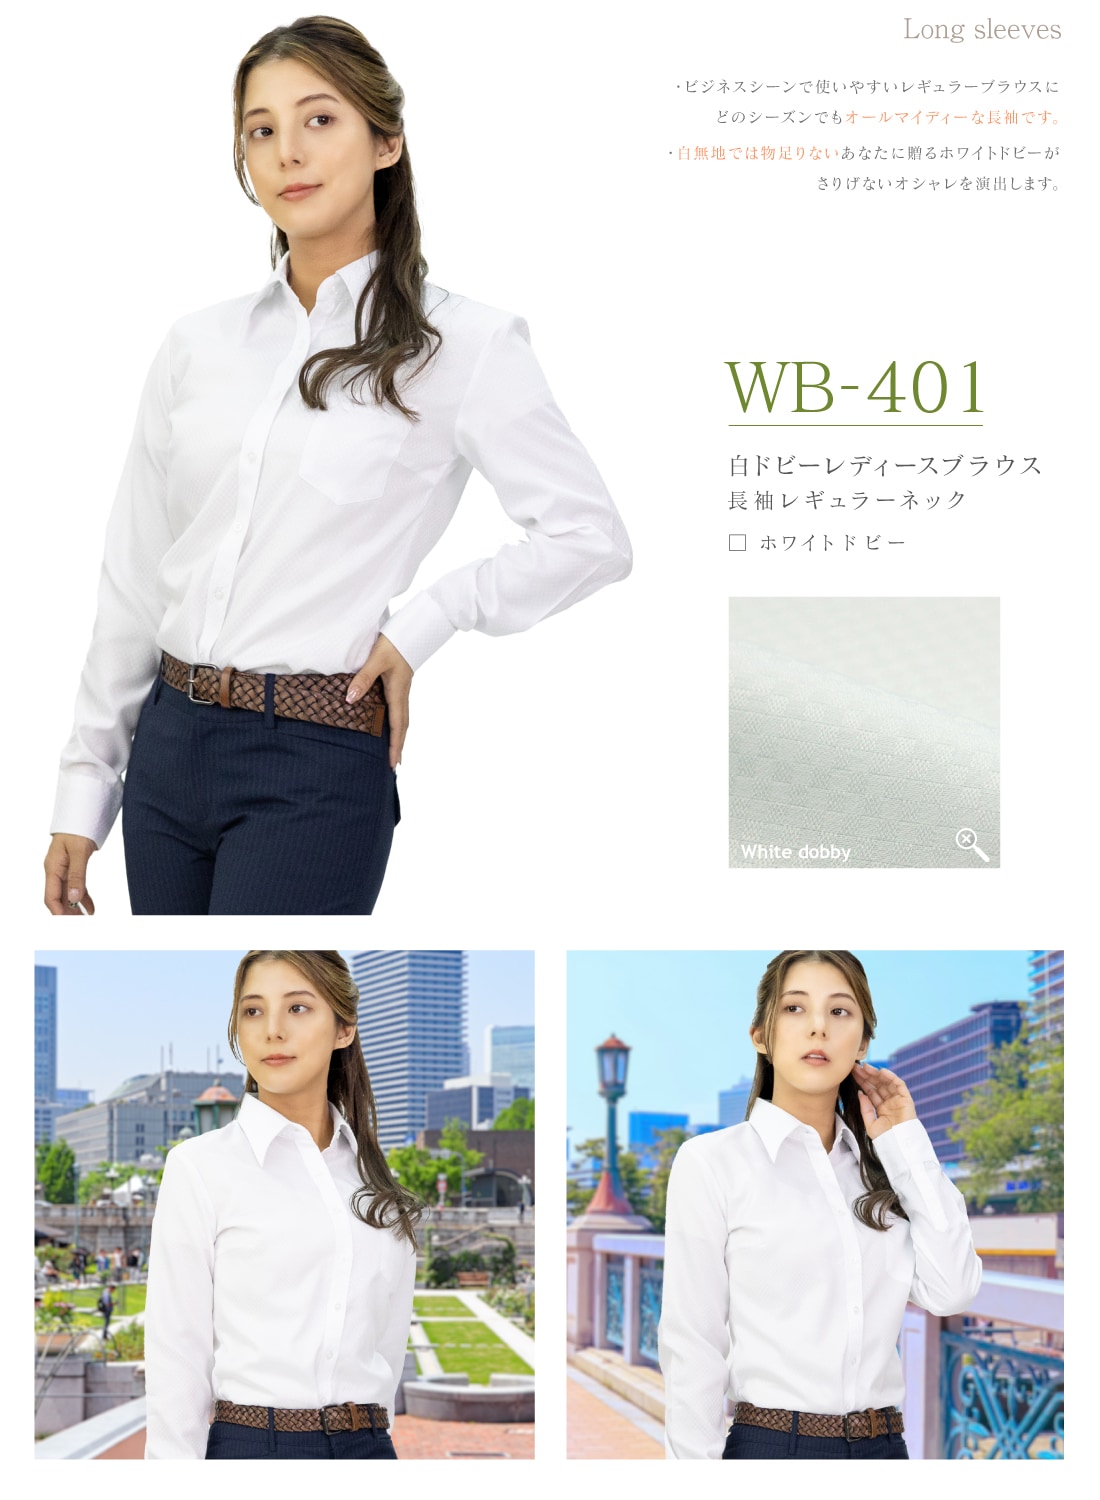 選べる 5枚セット 半袖 七分袖 長袖 白ドビー レディース ワイシャツ おしゃれ ブラウス 白シャツ 9種から選べる5枚セット 全5サイズ  WBシリーズ 送料無料-WAWAJAPAN